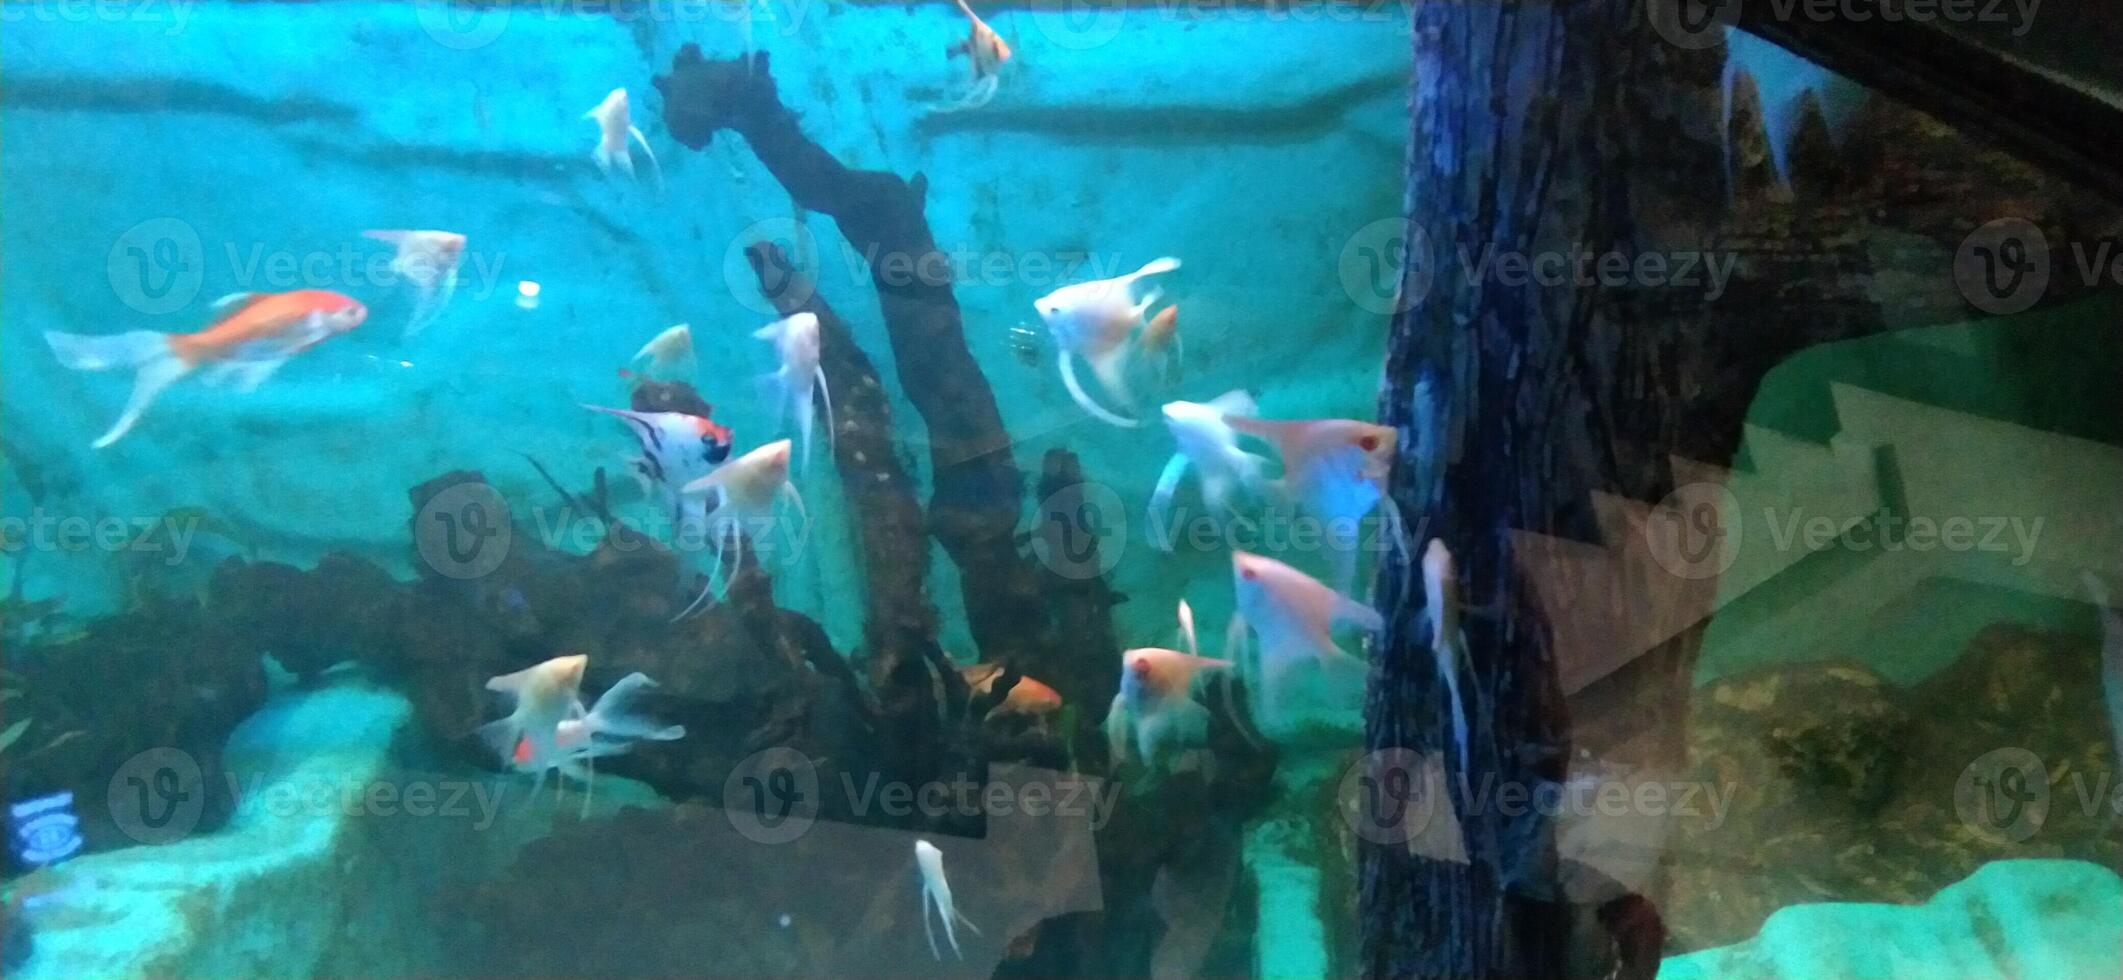 peces en el acuario foto